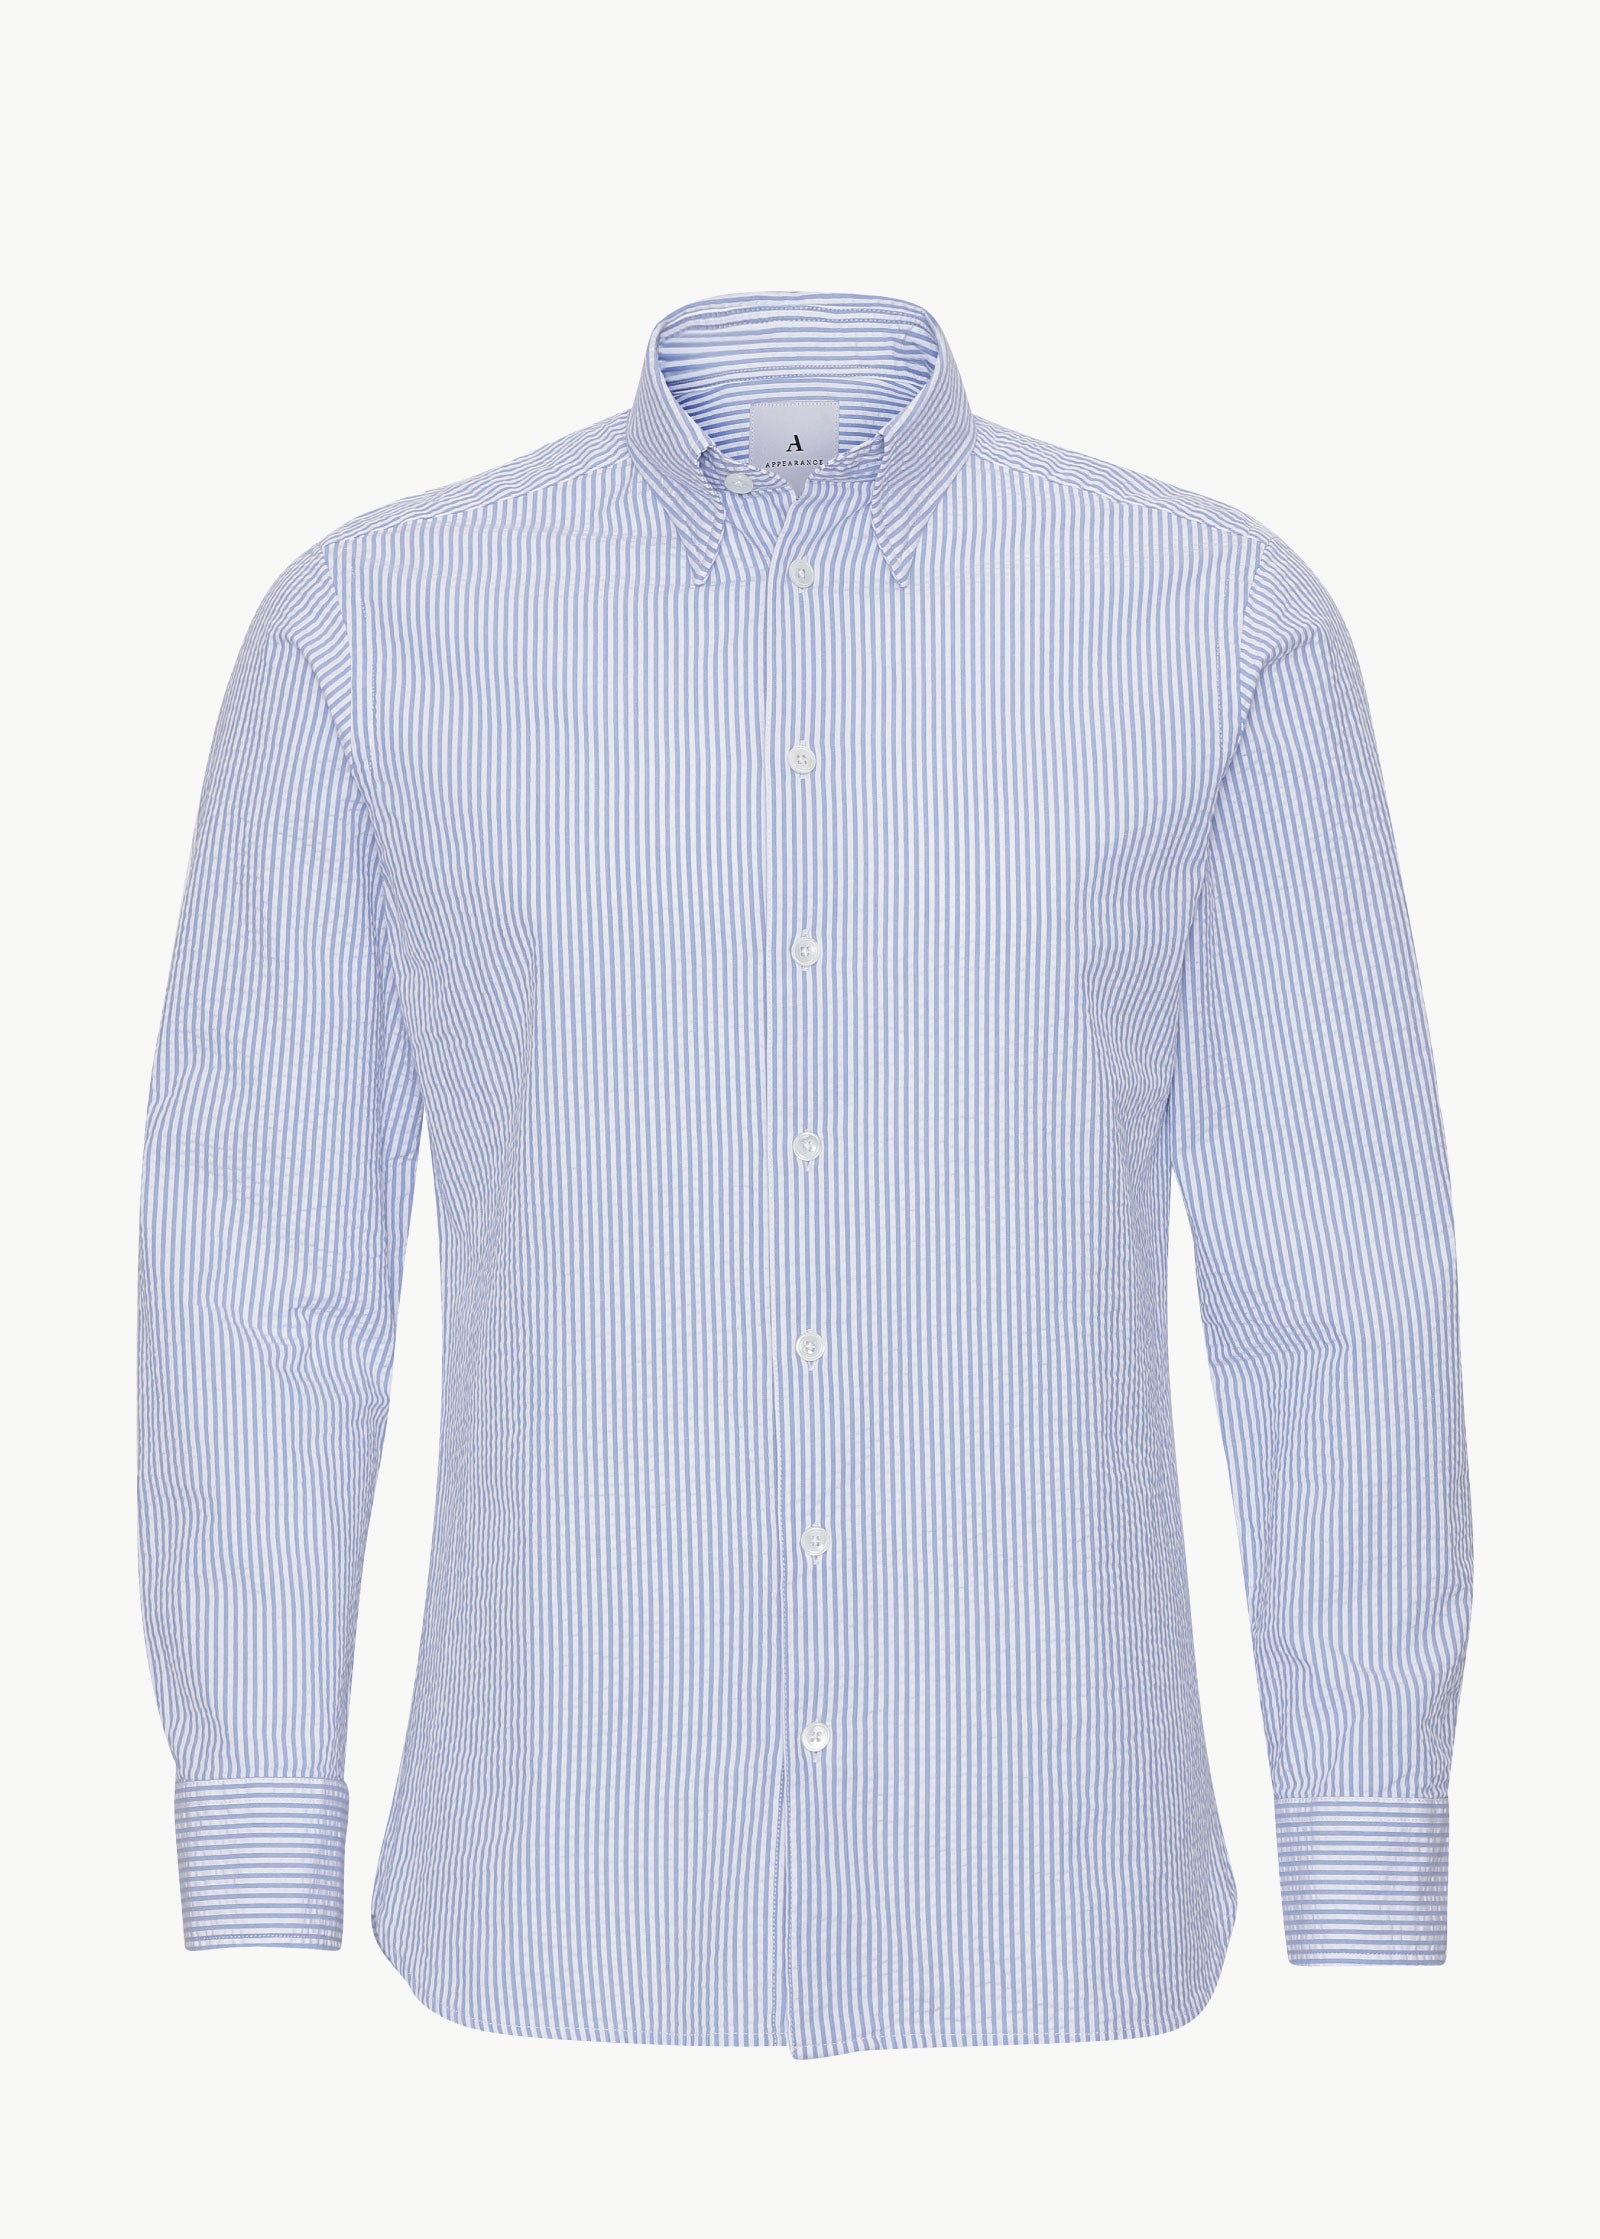 Seersucker Shirt, Brilliant Blue / White